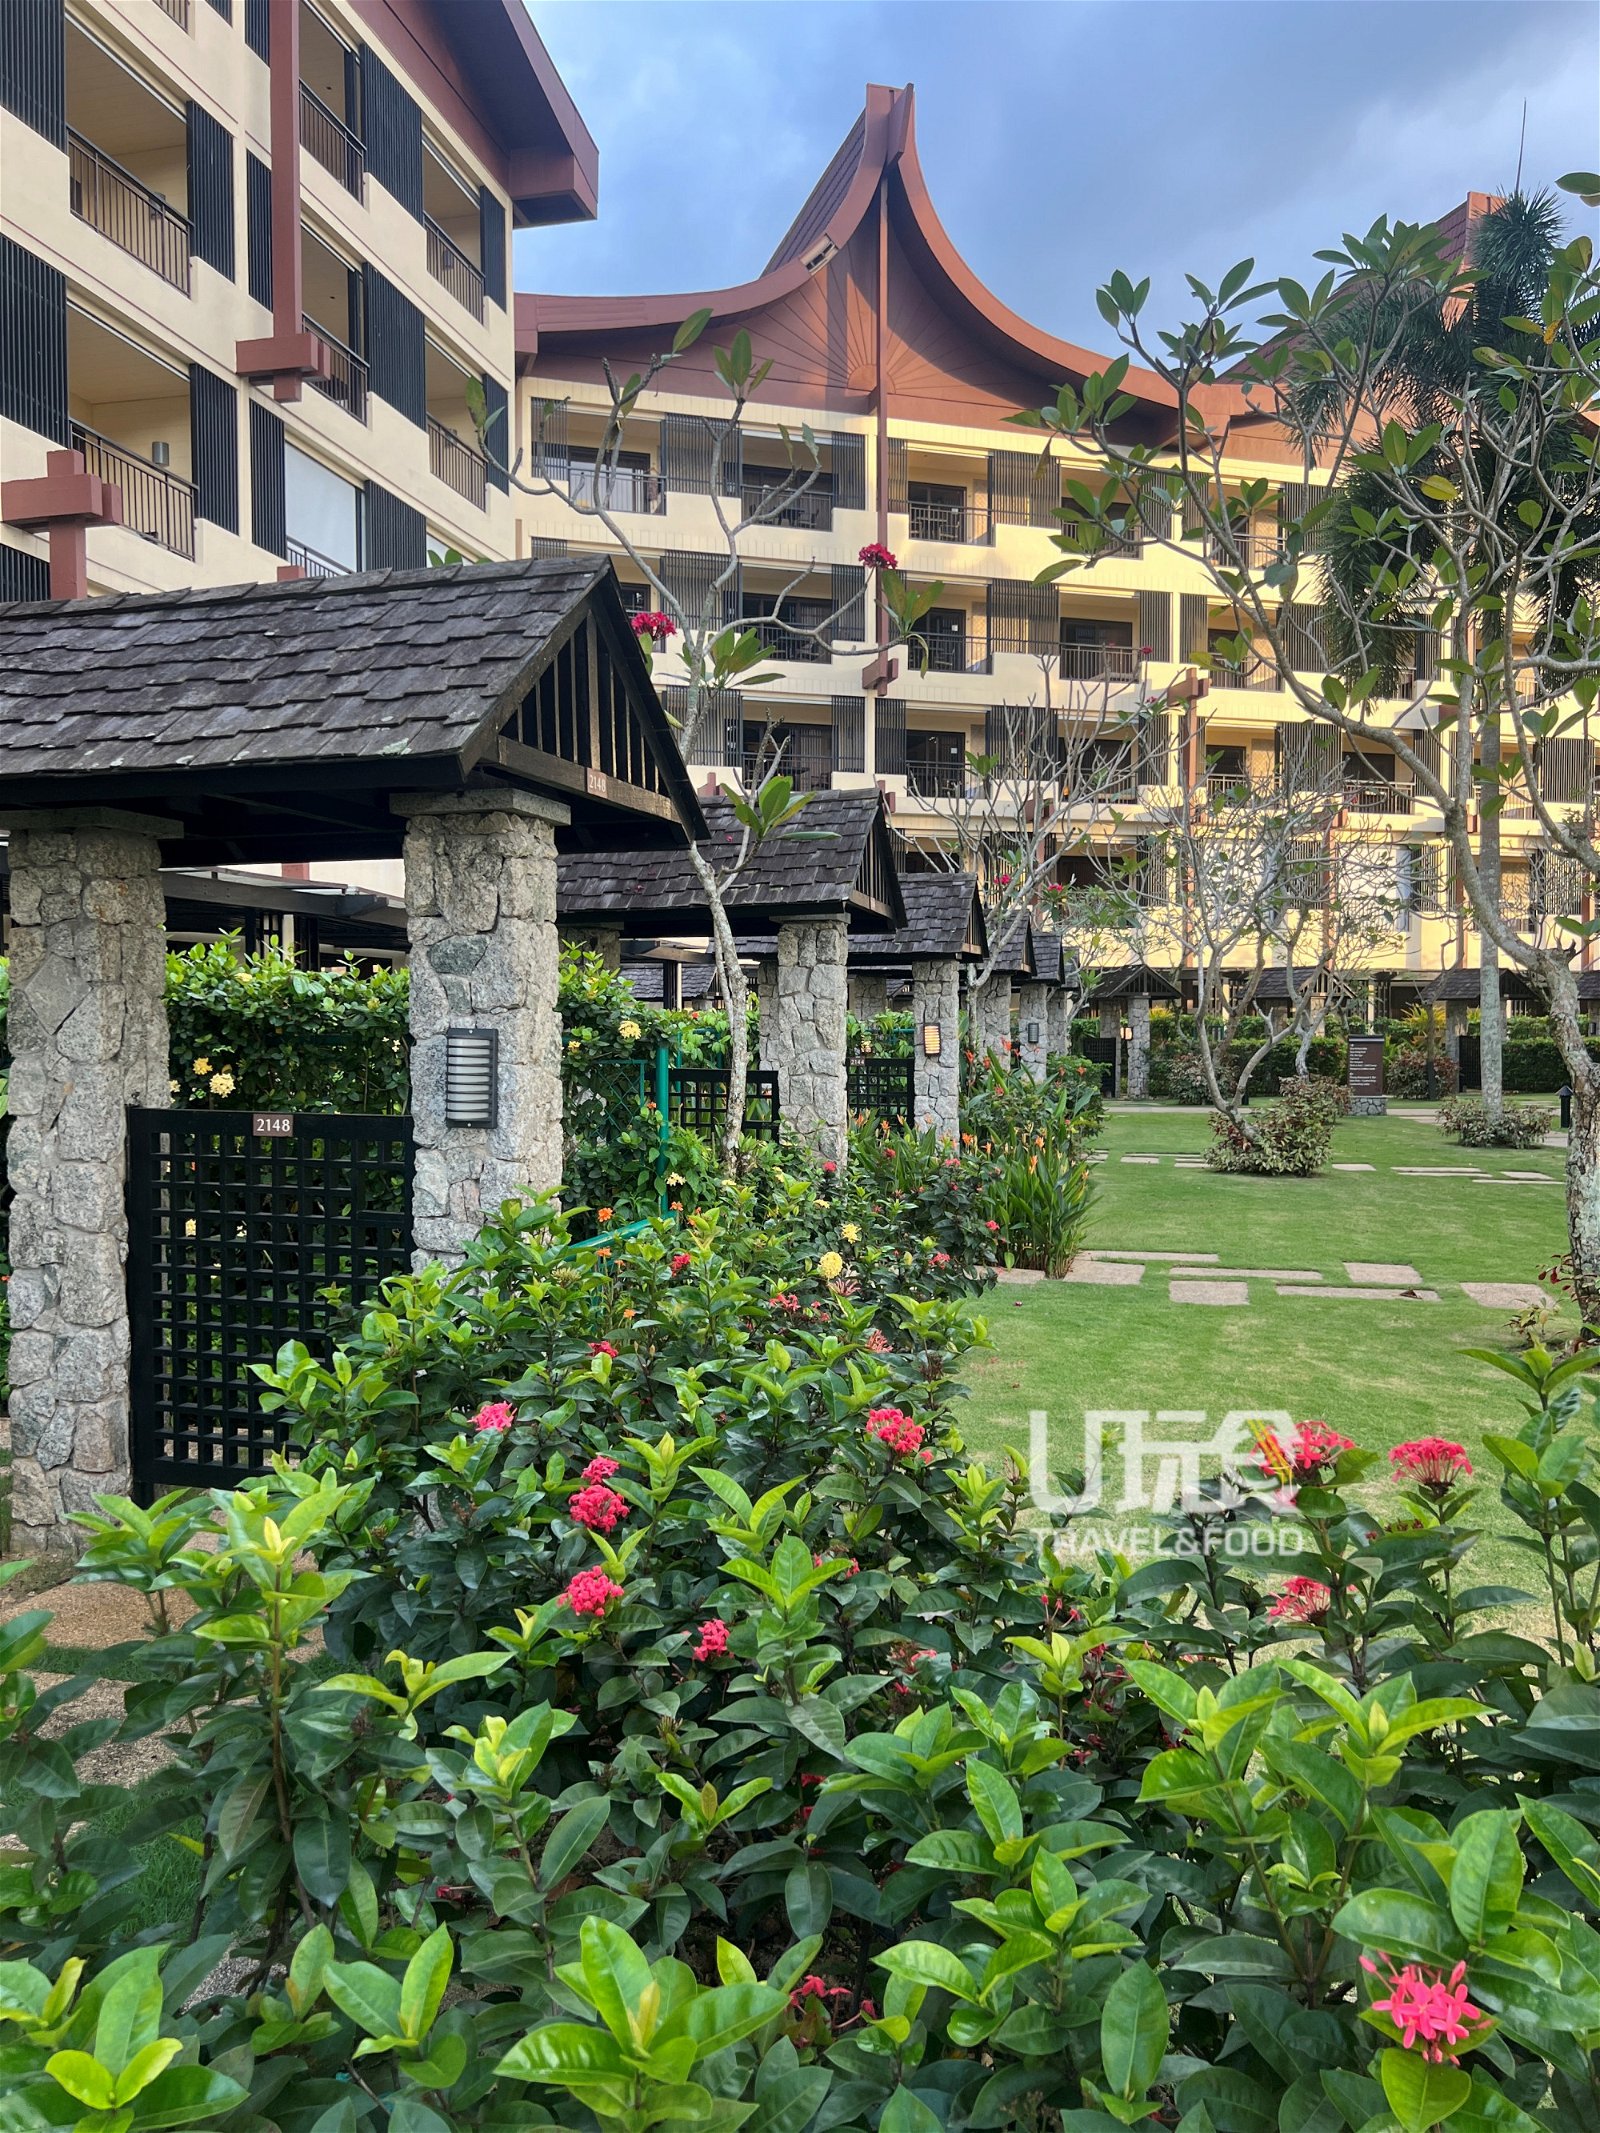 酒店拥有303间独特风格的客房，分布在拉莎翼和花园翼，每一间都充满了温暖的色彩和自然元素，提供舒适的住宿体验。